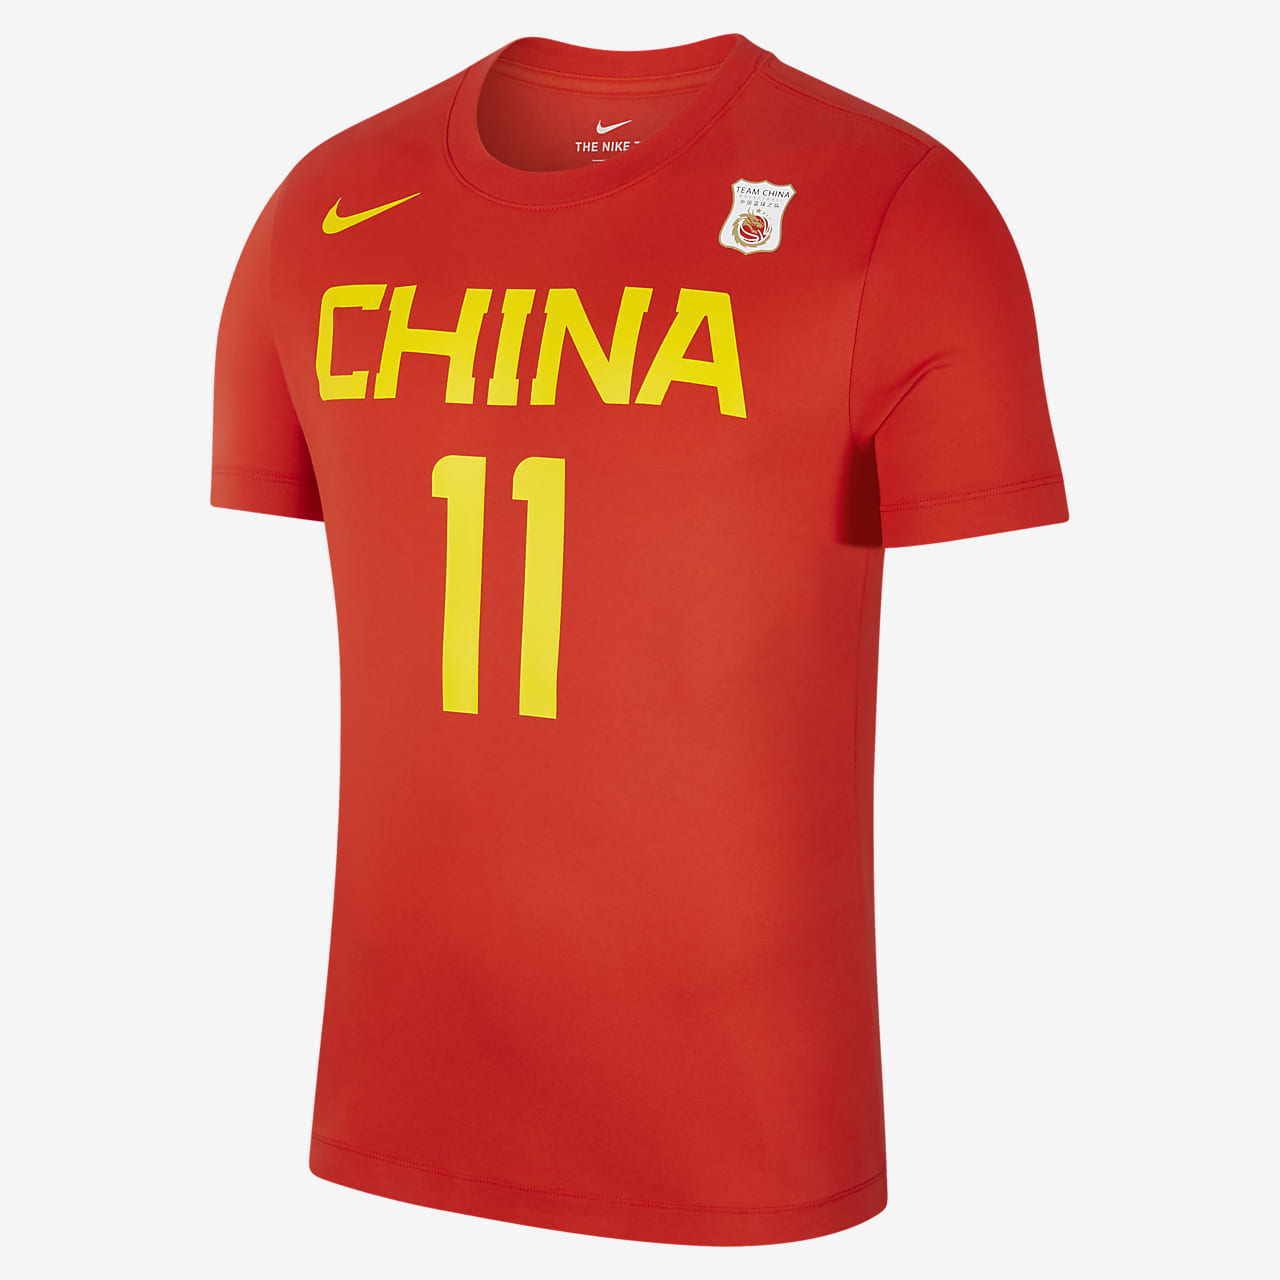 中国队 Nike Dri-FIT 男子篮球T恤